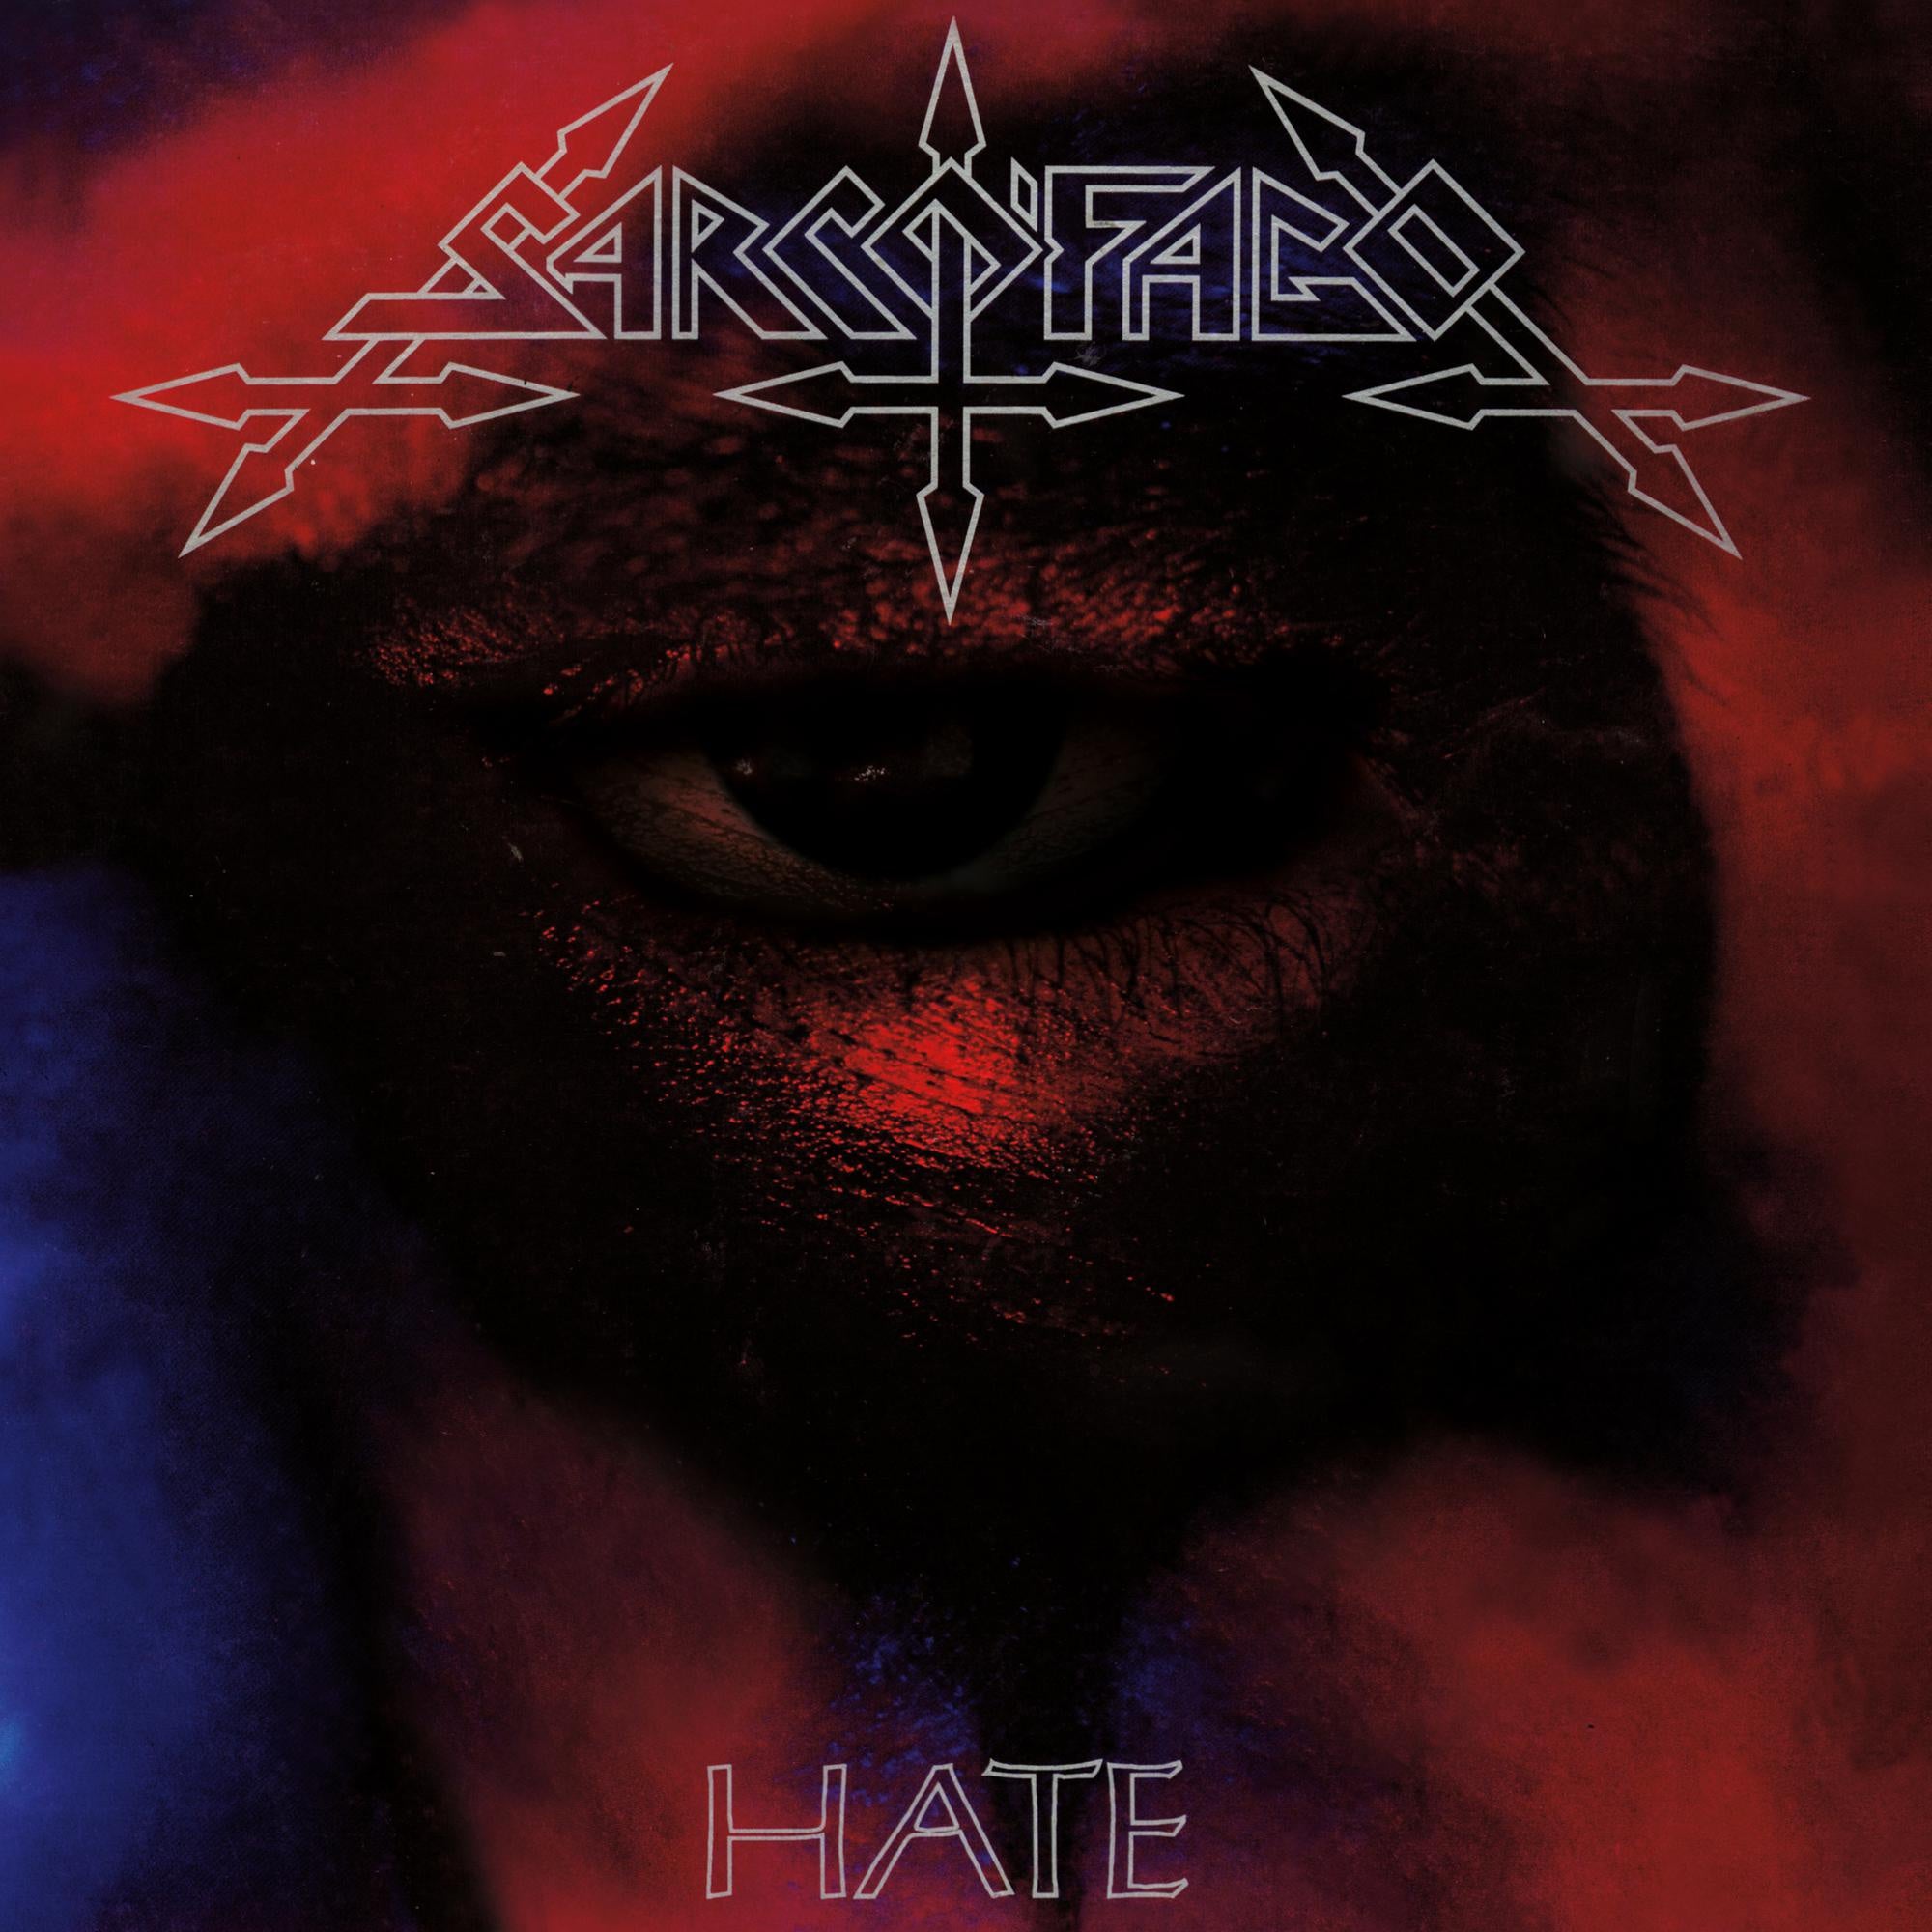 Sarcofago - Hate (1994) - New Cassette 2020 Greyhaze Tape - Death Metal